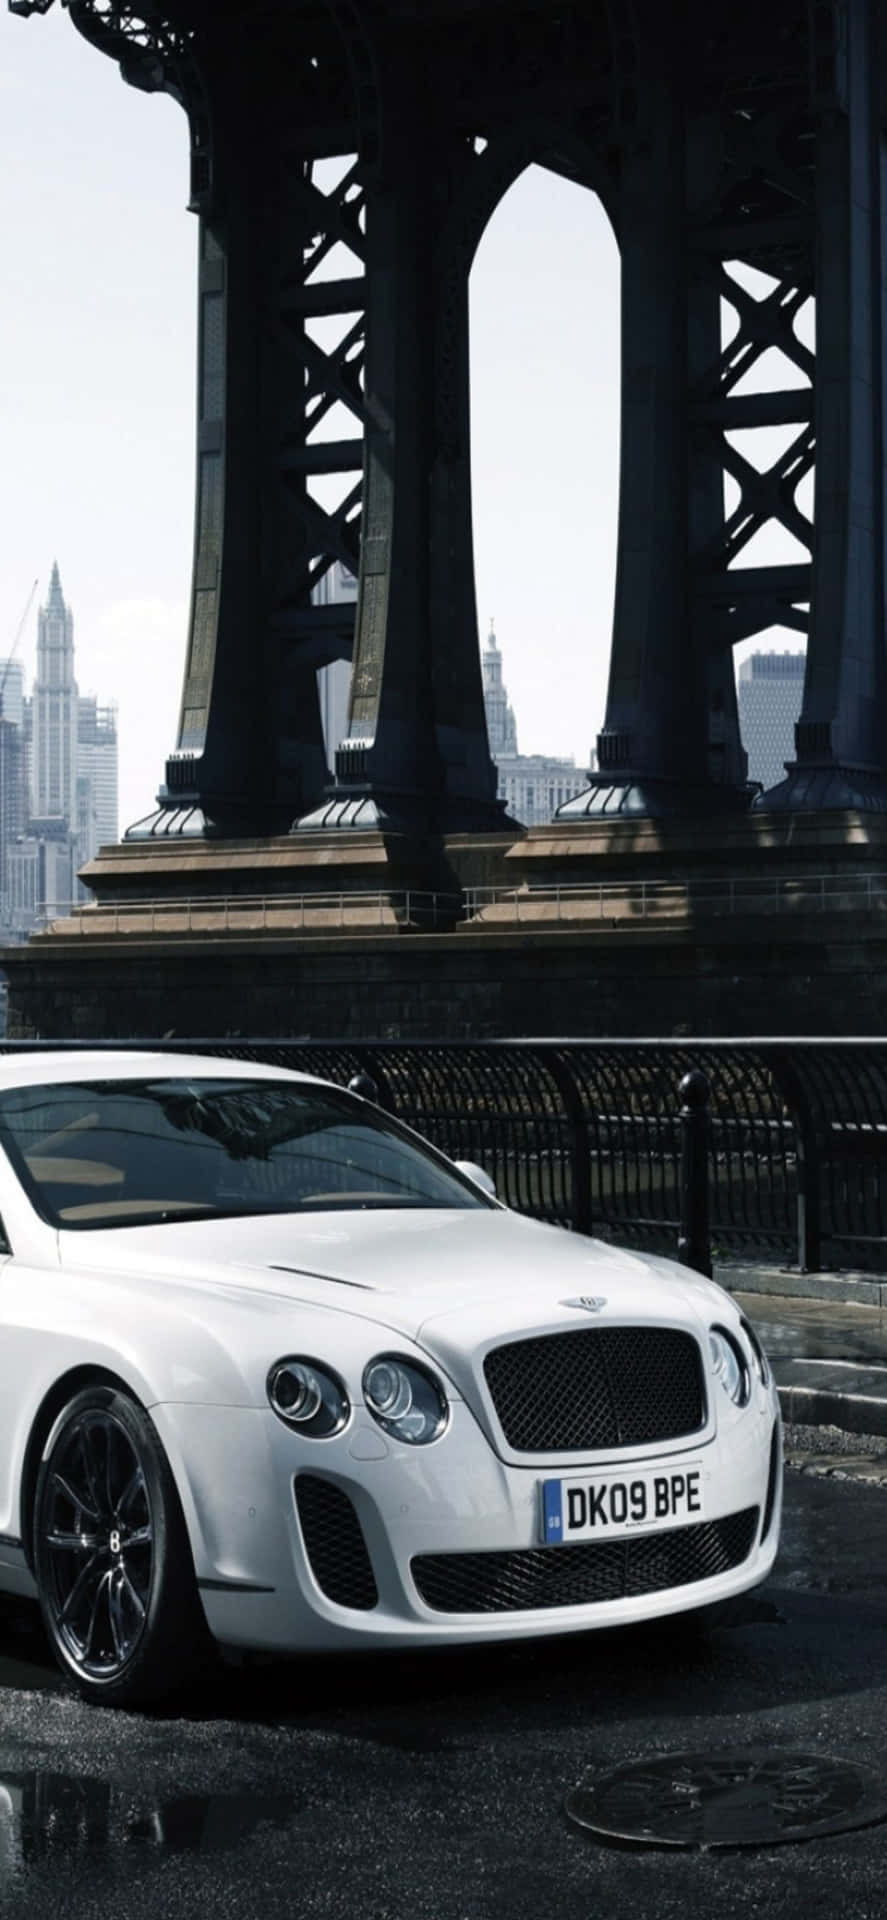 Luxustrifft Technologie In Diesem Foto Eines Bentley Und Eines Iphone Xs Max Zusammen.